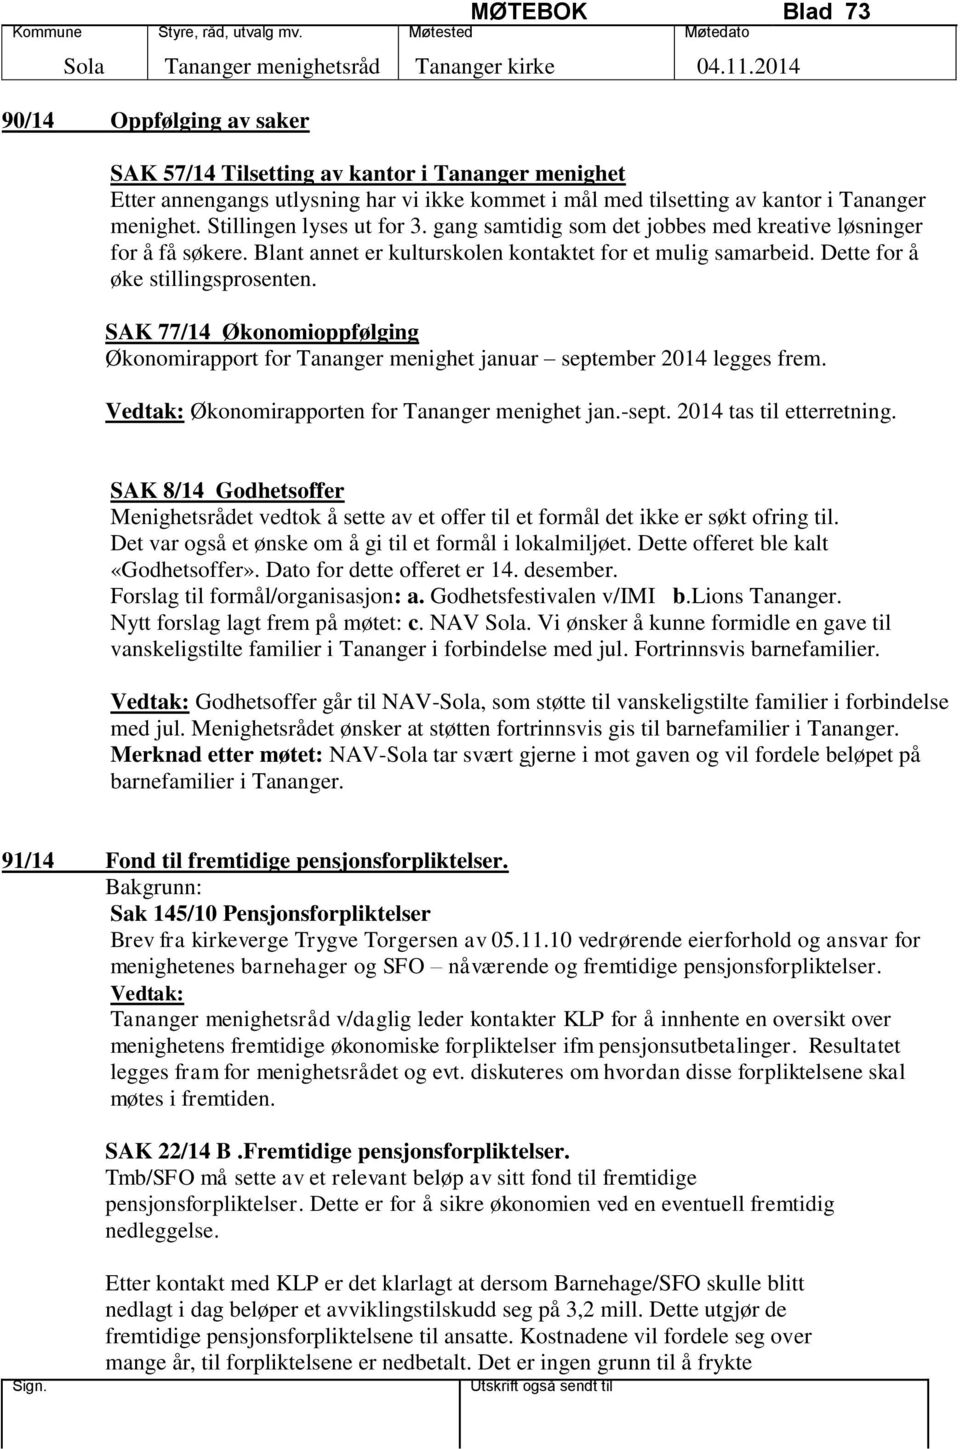 SAK 77/14 Økonomioppfølging Økonomirapport for Tananger menighet januar september 2014 legges frem. Økonomirapporten for Tananger menighet jan.-sept. 2014 tas til etterretning.